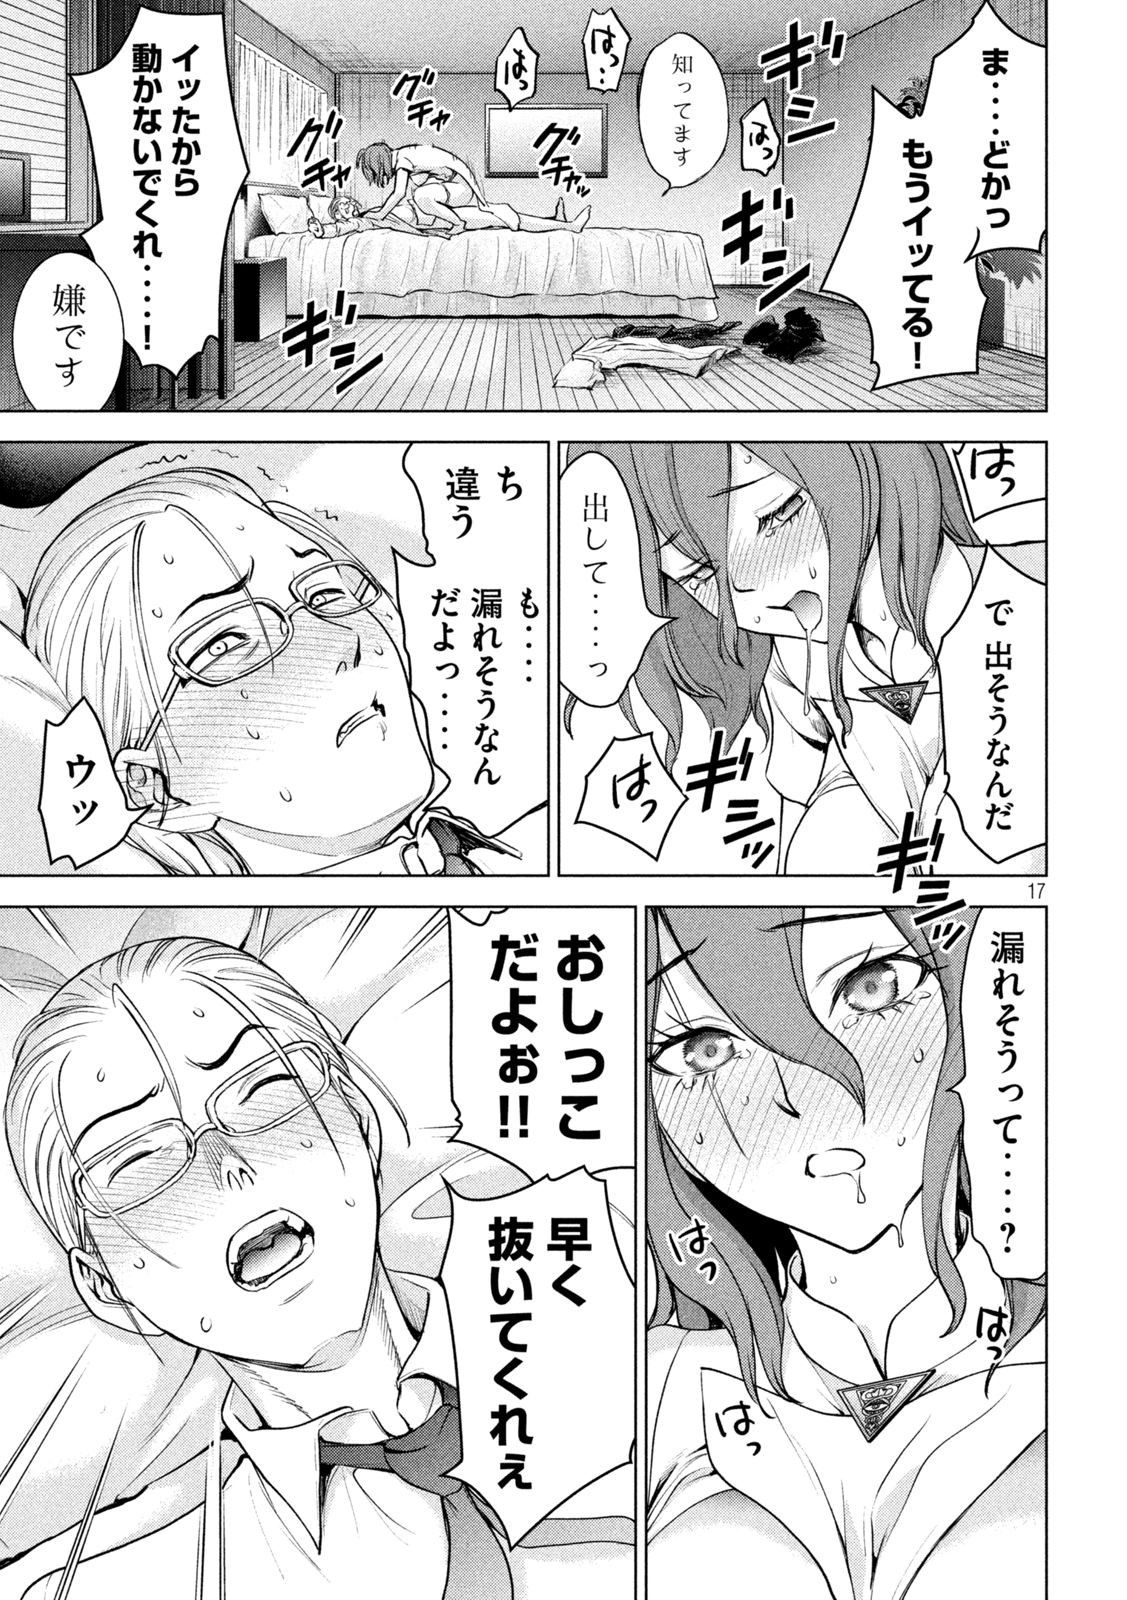 【Image】General manga with terrible erotic scenes Part 33 18